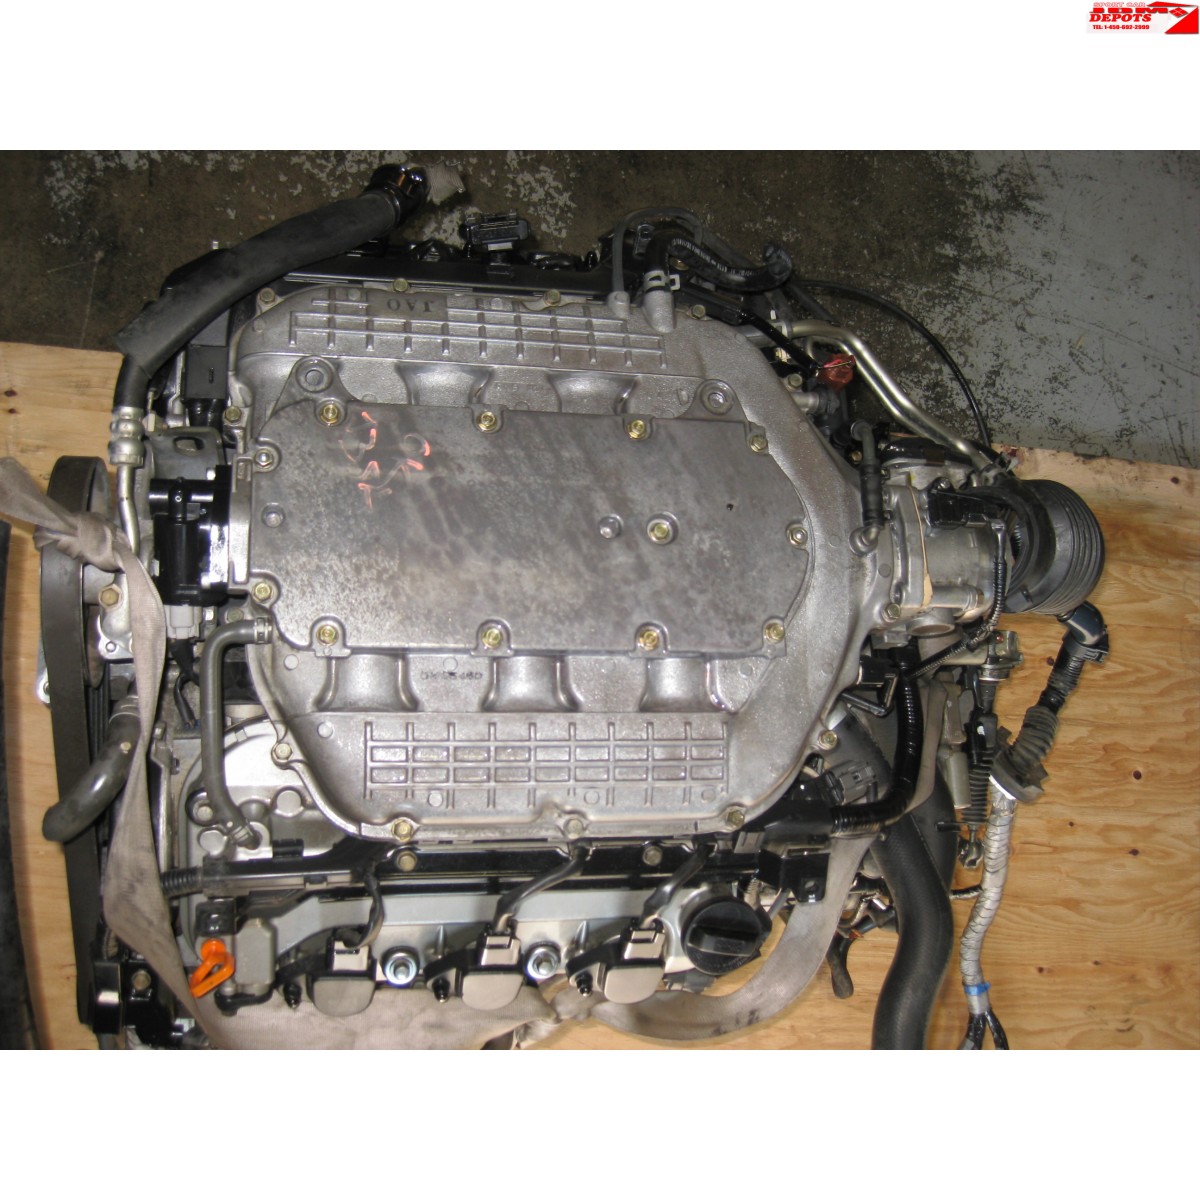 Engine Air Intake Hose Fits ACURA MDX 2005-2006  Honda Pilot 2005 V6-3.5L 